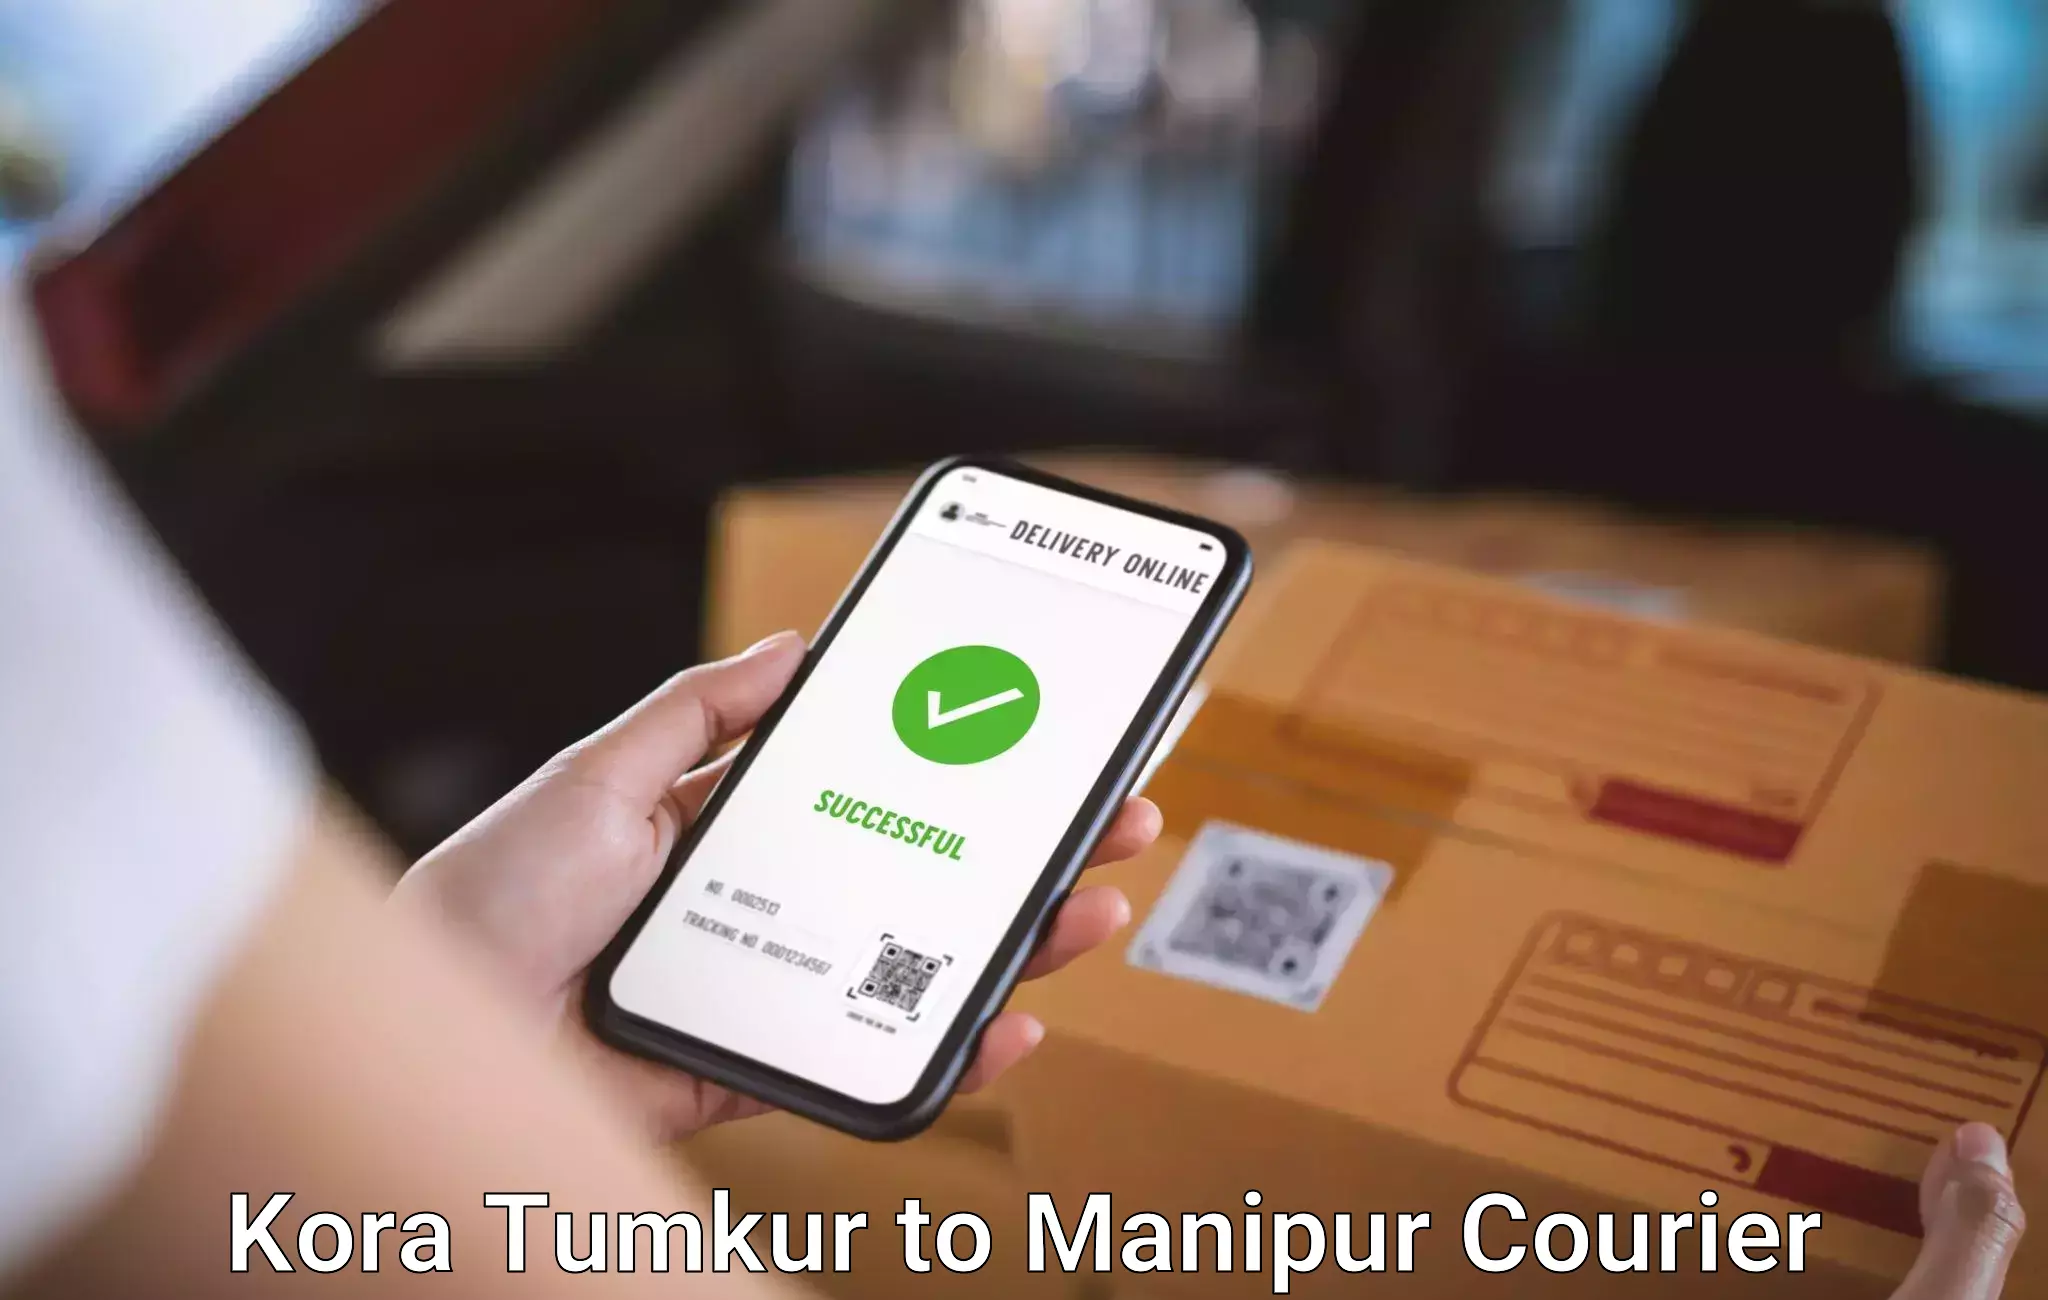 Baggage transport calculator Kora Tumkur to Manipur